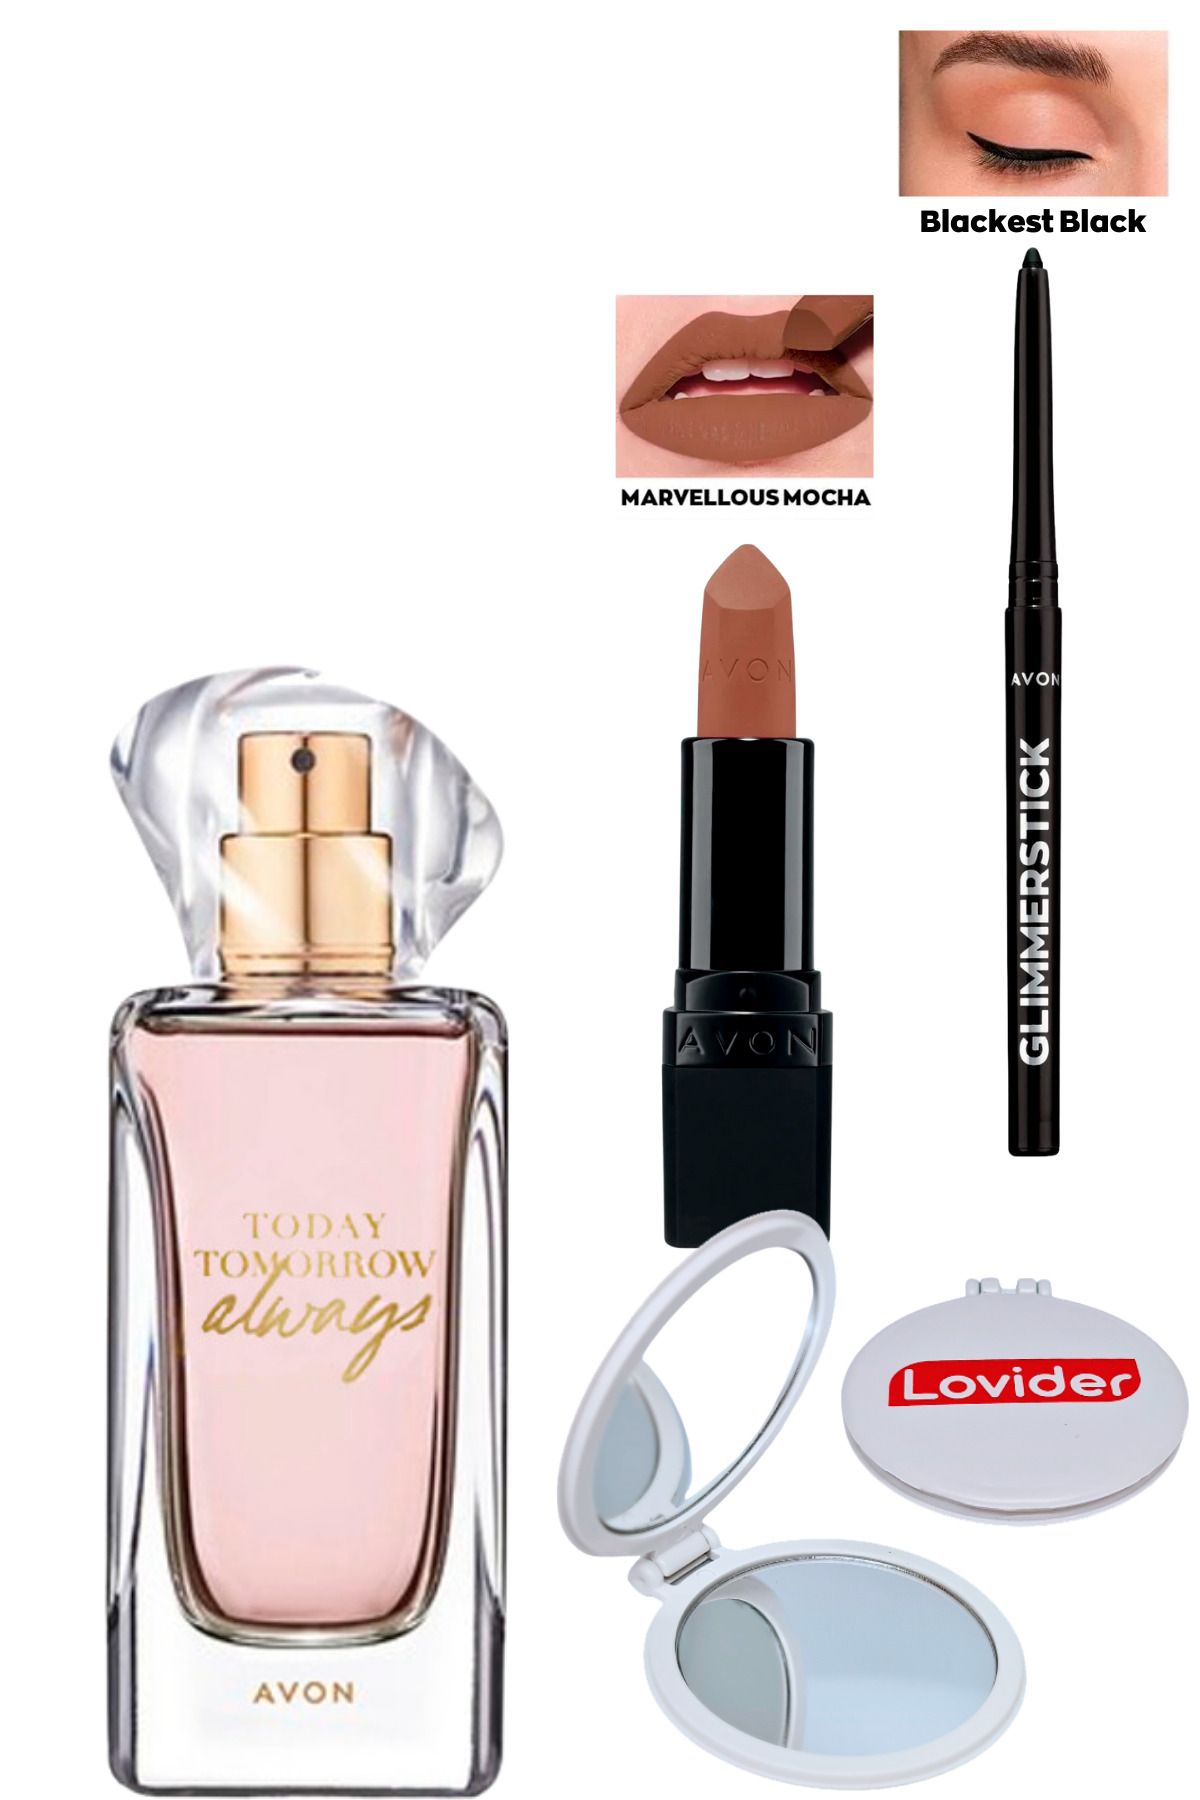 Avon TTA Always Kadın Parfüm EDP 50ml + Marvellous Mocha Mat Ruj + Siyah Göz Kalemi + Lovider Cep Aynası